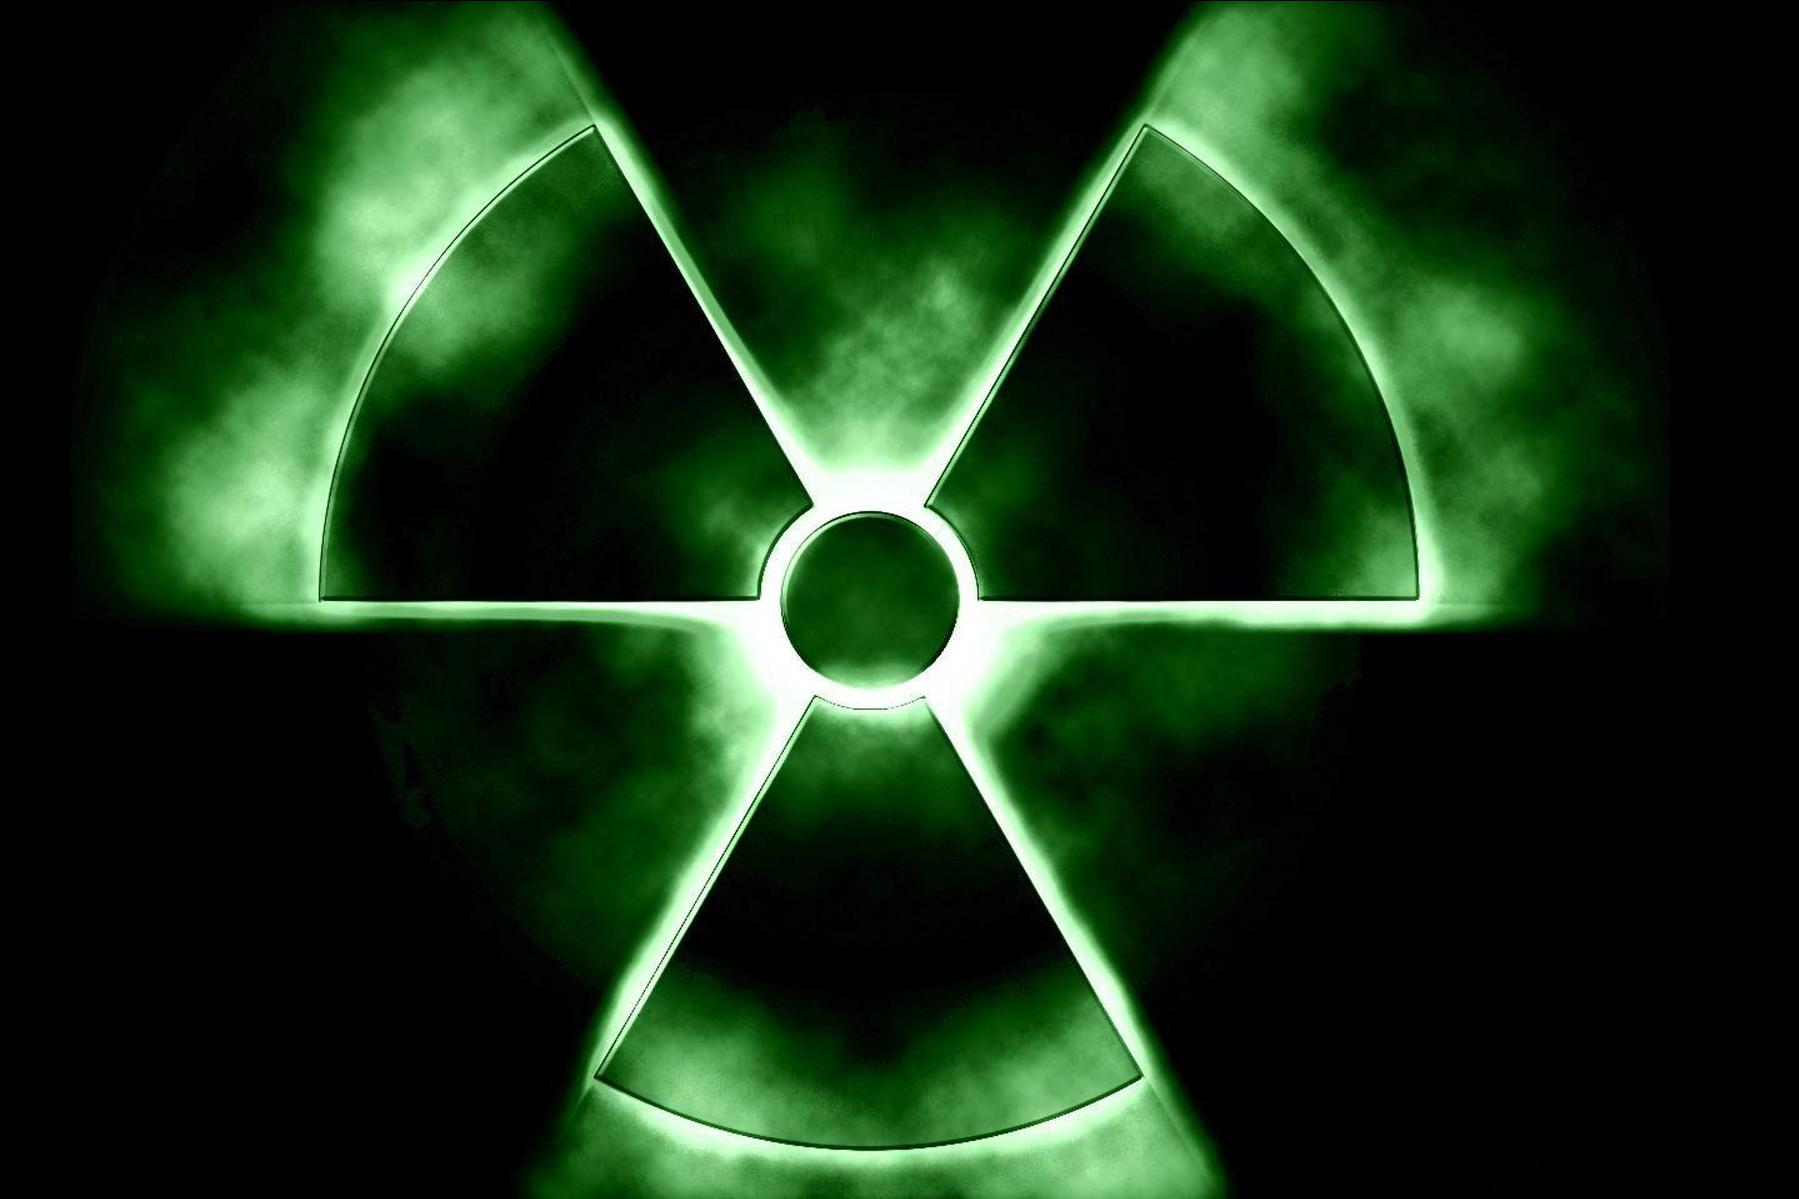 В Европе зафиксирован всплеск радиоактивности в воздухе